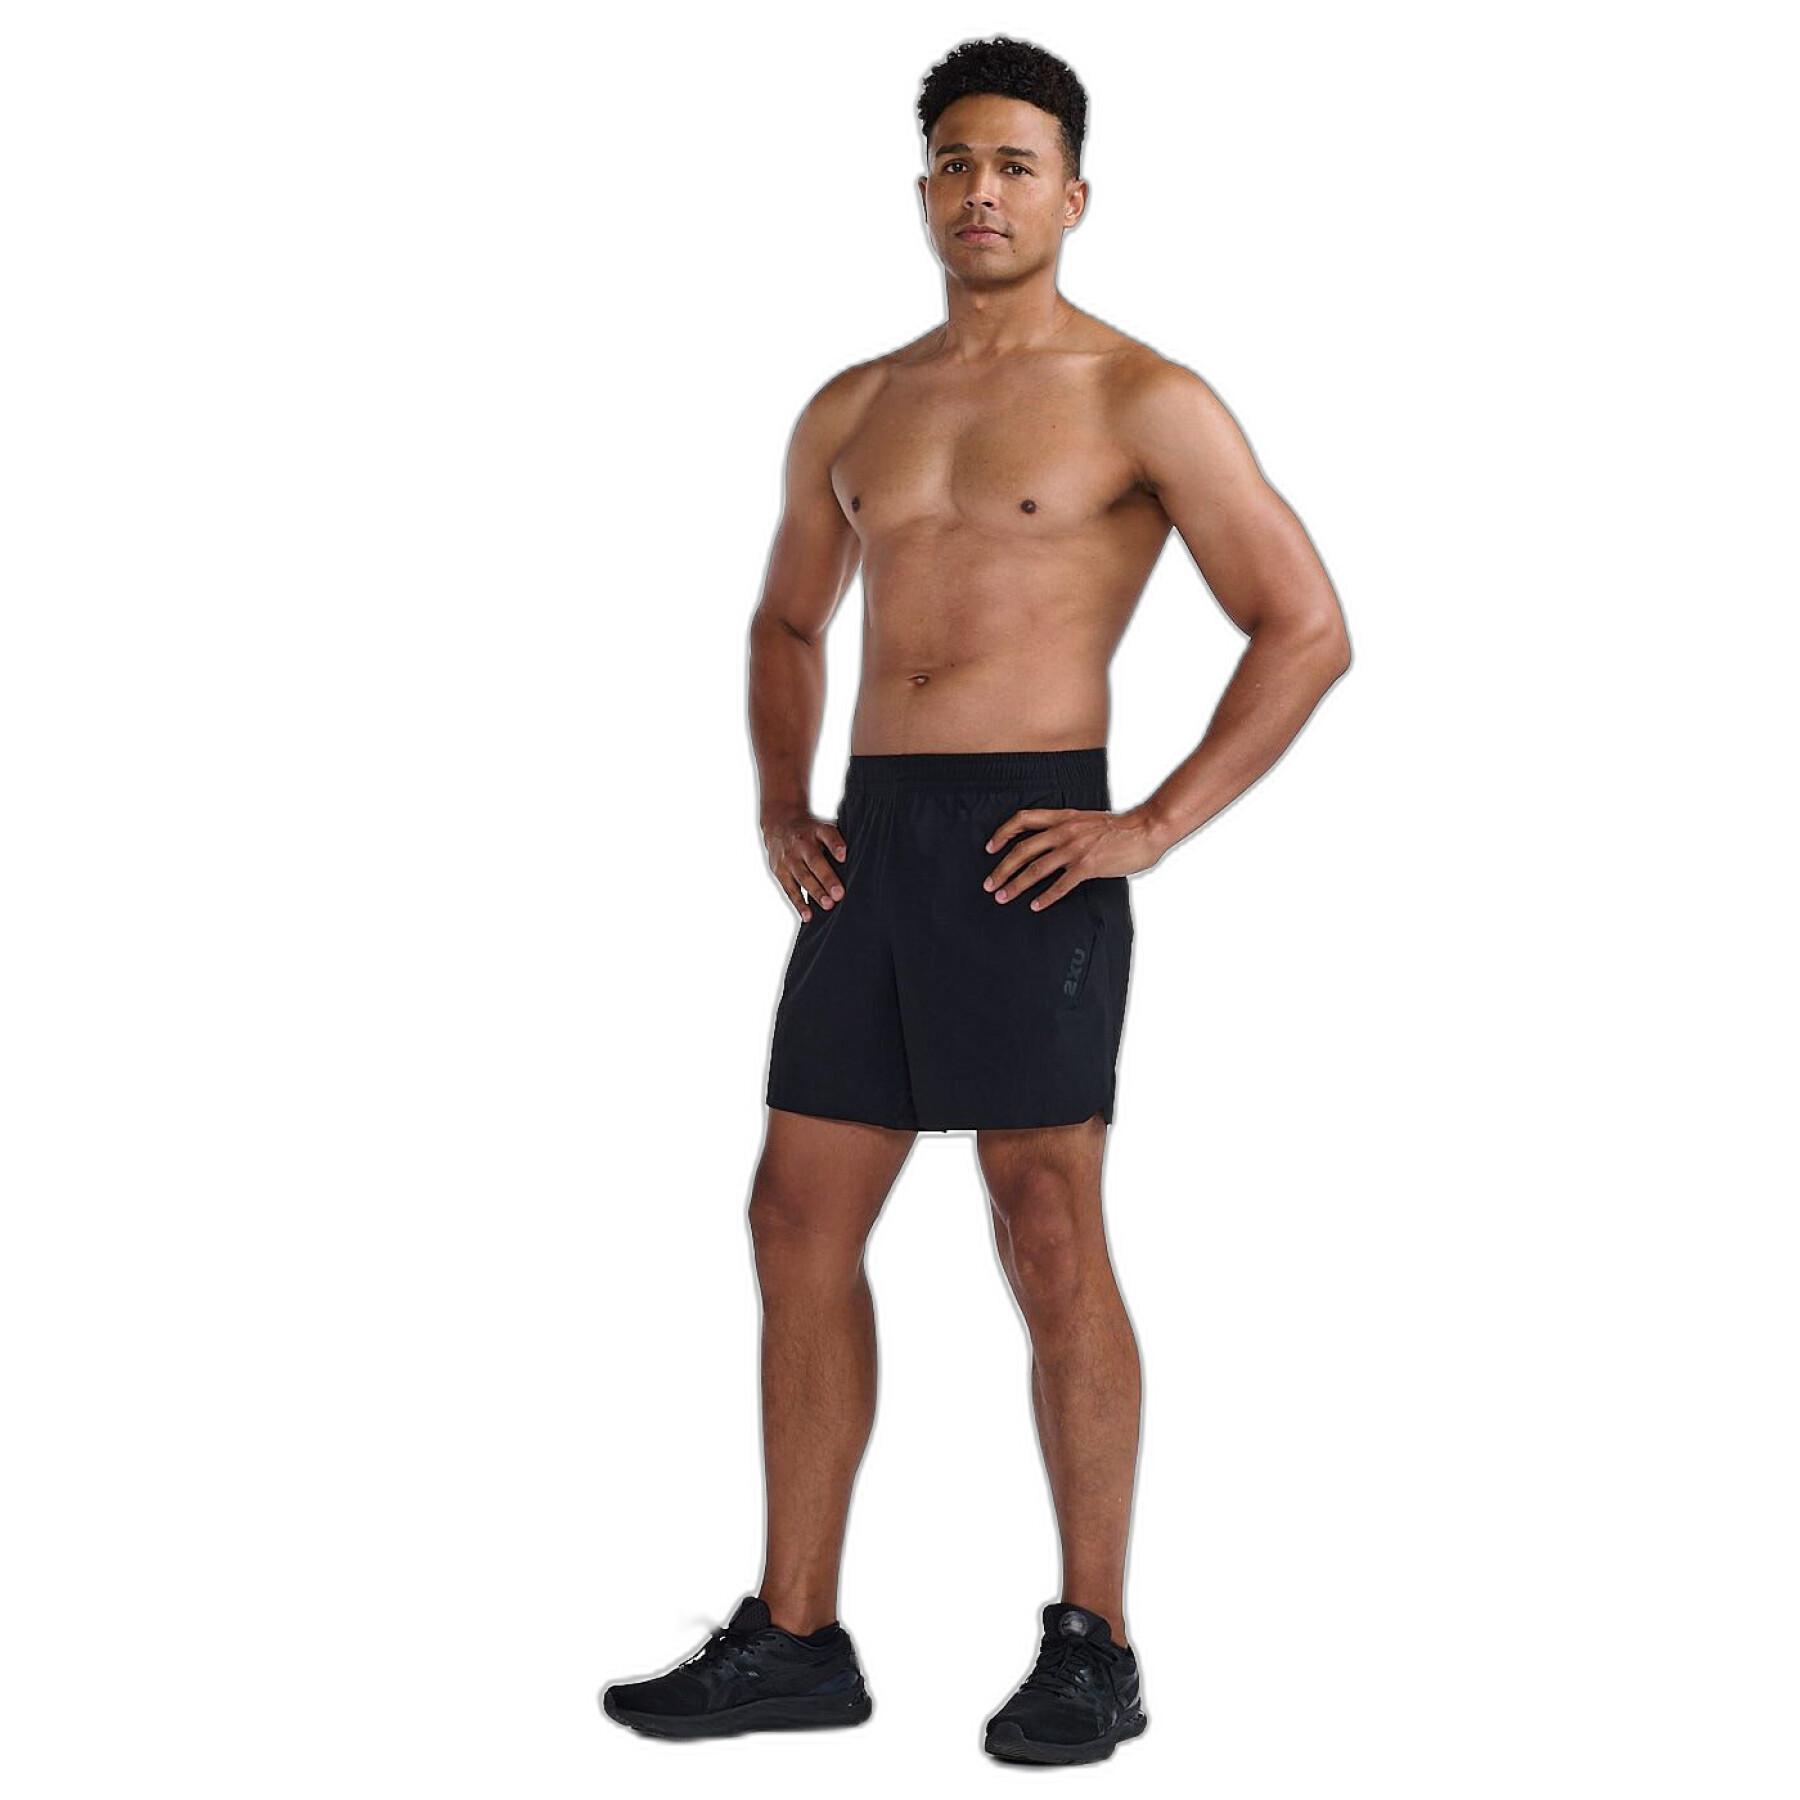 6-inch shorts 2XU Motion